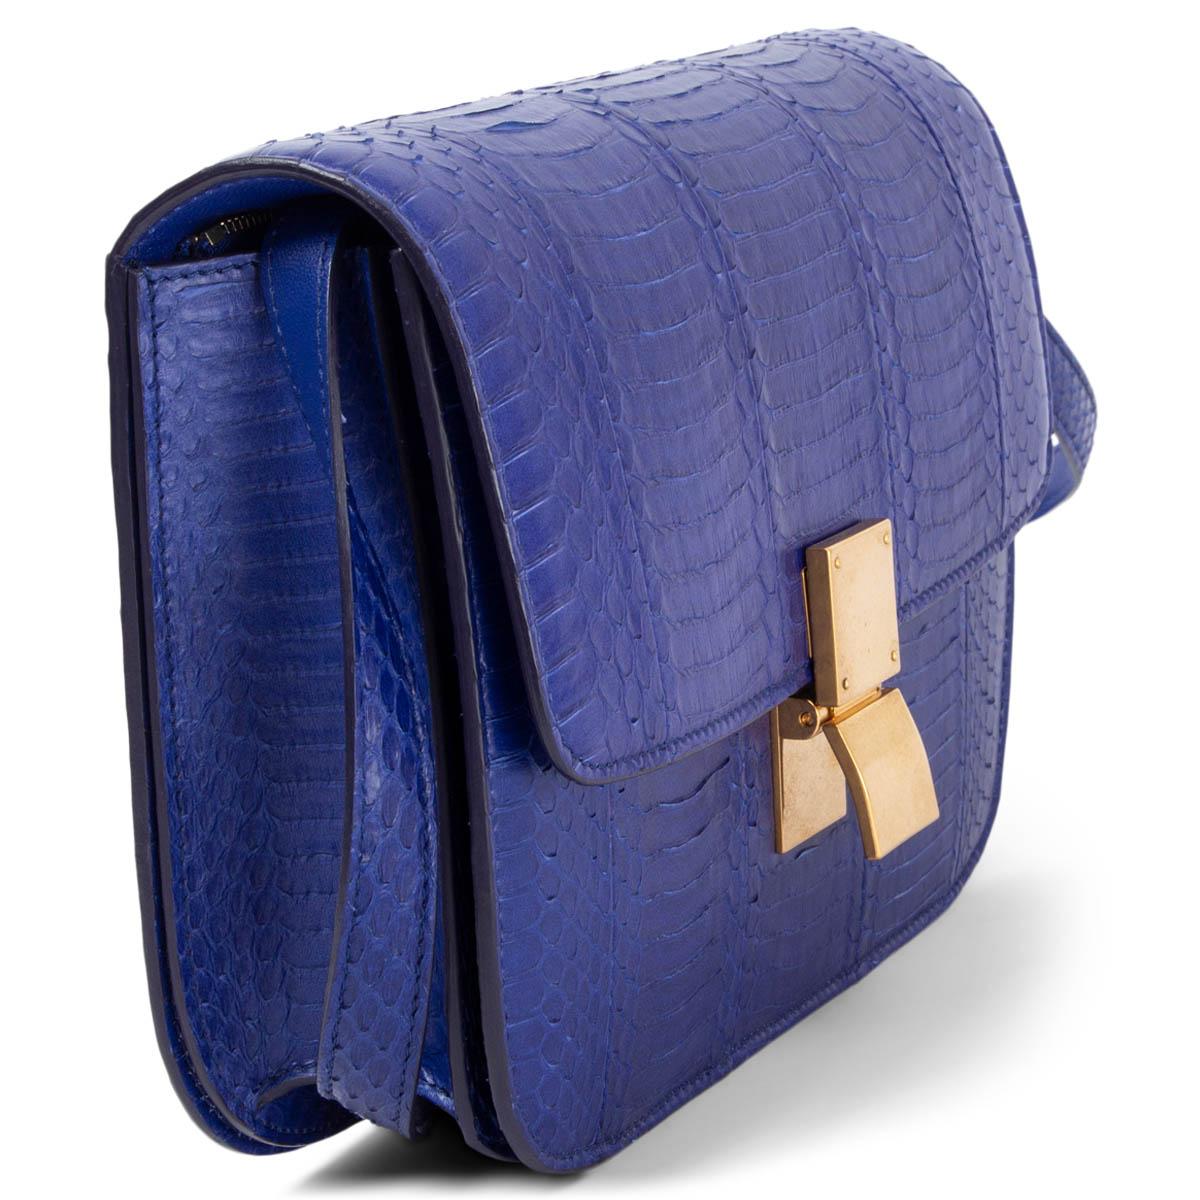 100% authentische Céline Medium Classic Bag in Indigo (violettblau) aus Pithon mit goldfarbener Hardware. Wird mit einem Druckverschluss auf der Vorderseite geöffnet. Die Innenseite ist in zwei Fächer unterteilt, mit zwei offenen Taschen auf der